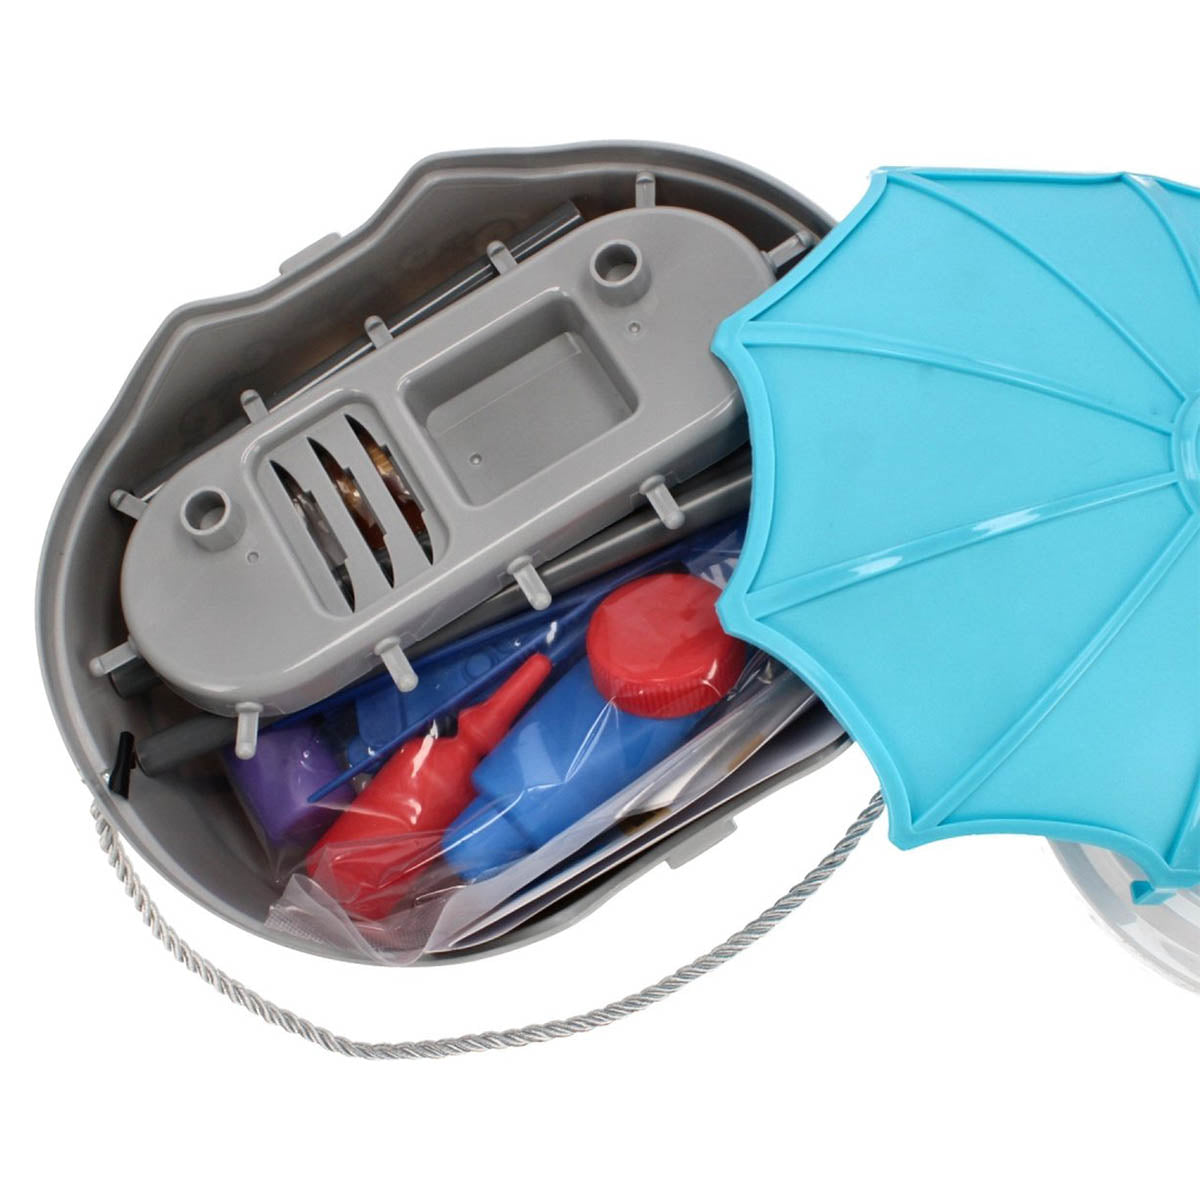 <tc>Ariko</tc>  Toy Suitcase Doctor 39 Teile - Blutdruckmessgerät, Schere, Medikamente, Untersuchungsutensilien und vieles mehr - praktischer Koffer zum Mitnehmen